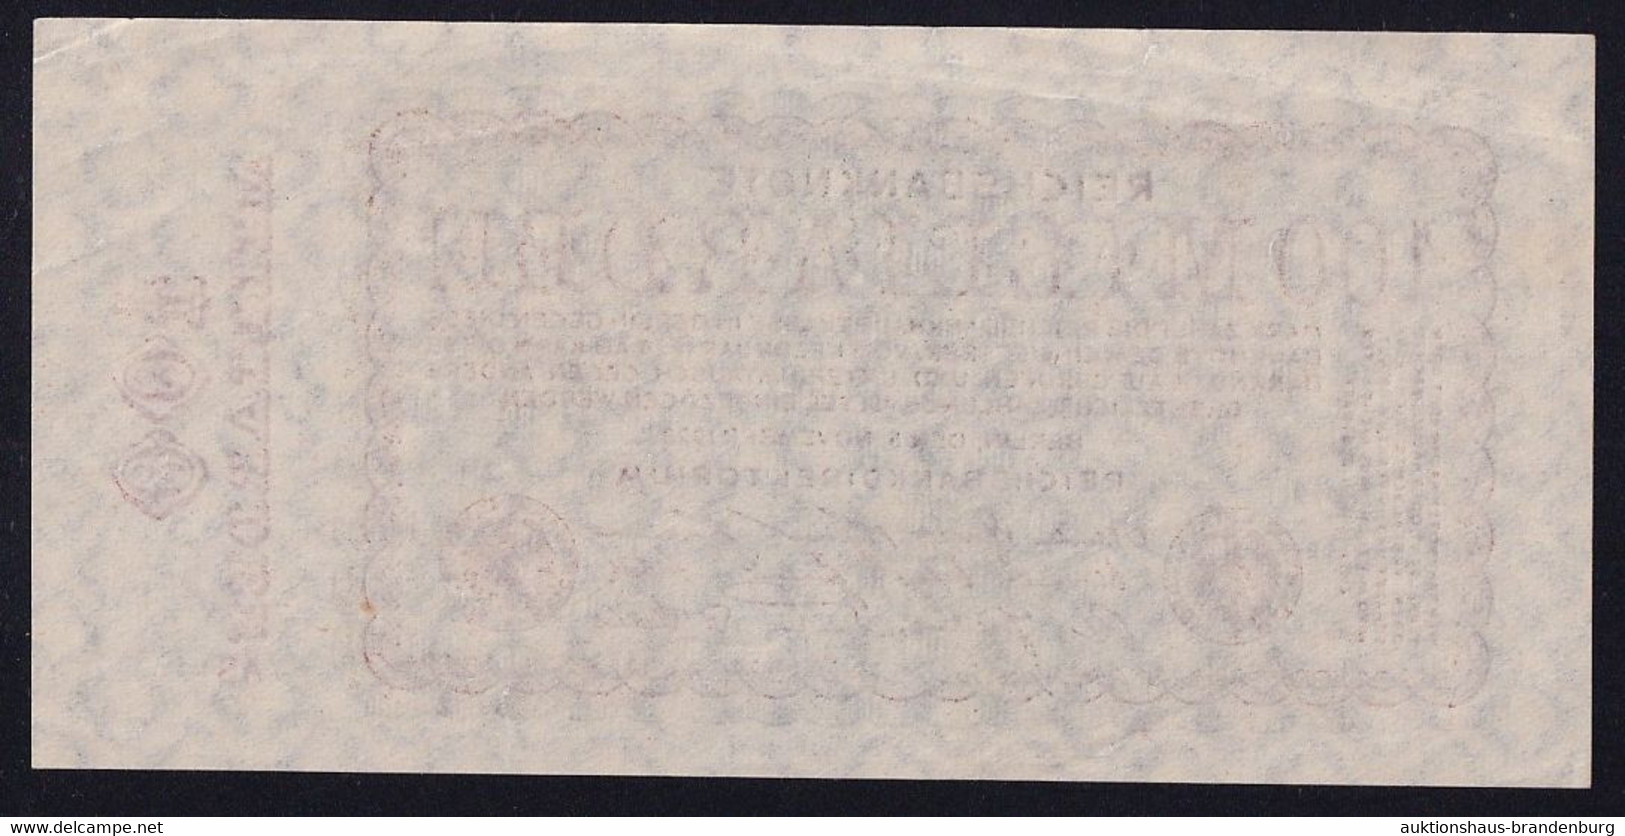 100 Milliarden Mark 5.11.1923 - FZ AS - Reichsbank (DEU-161a) - 100 Mrd. Mark